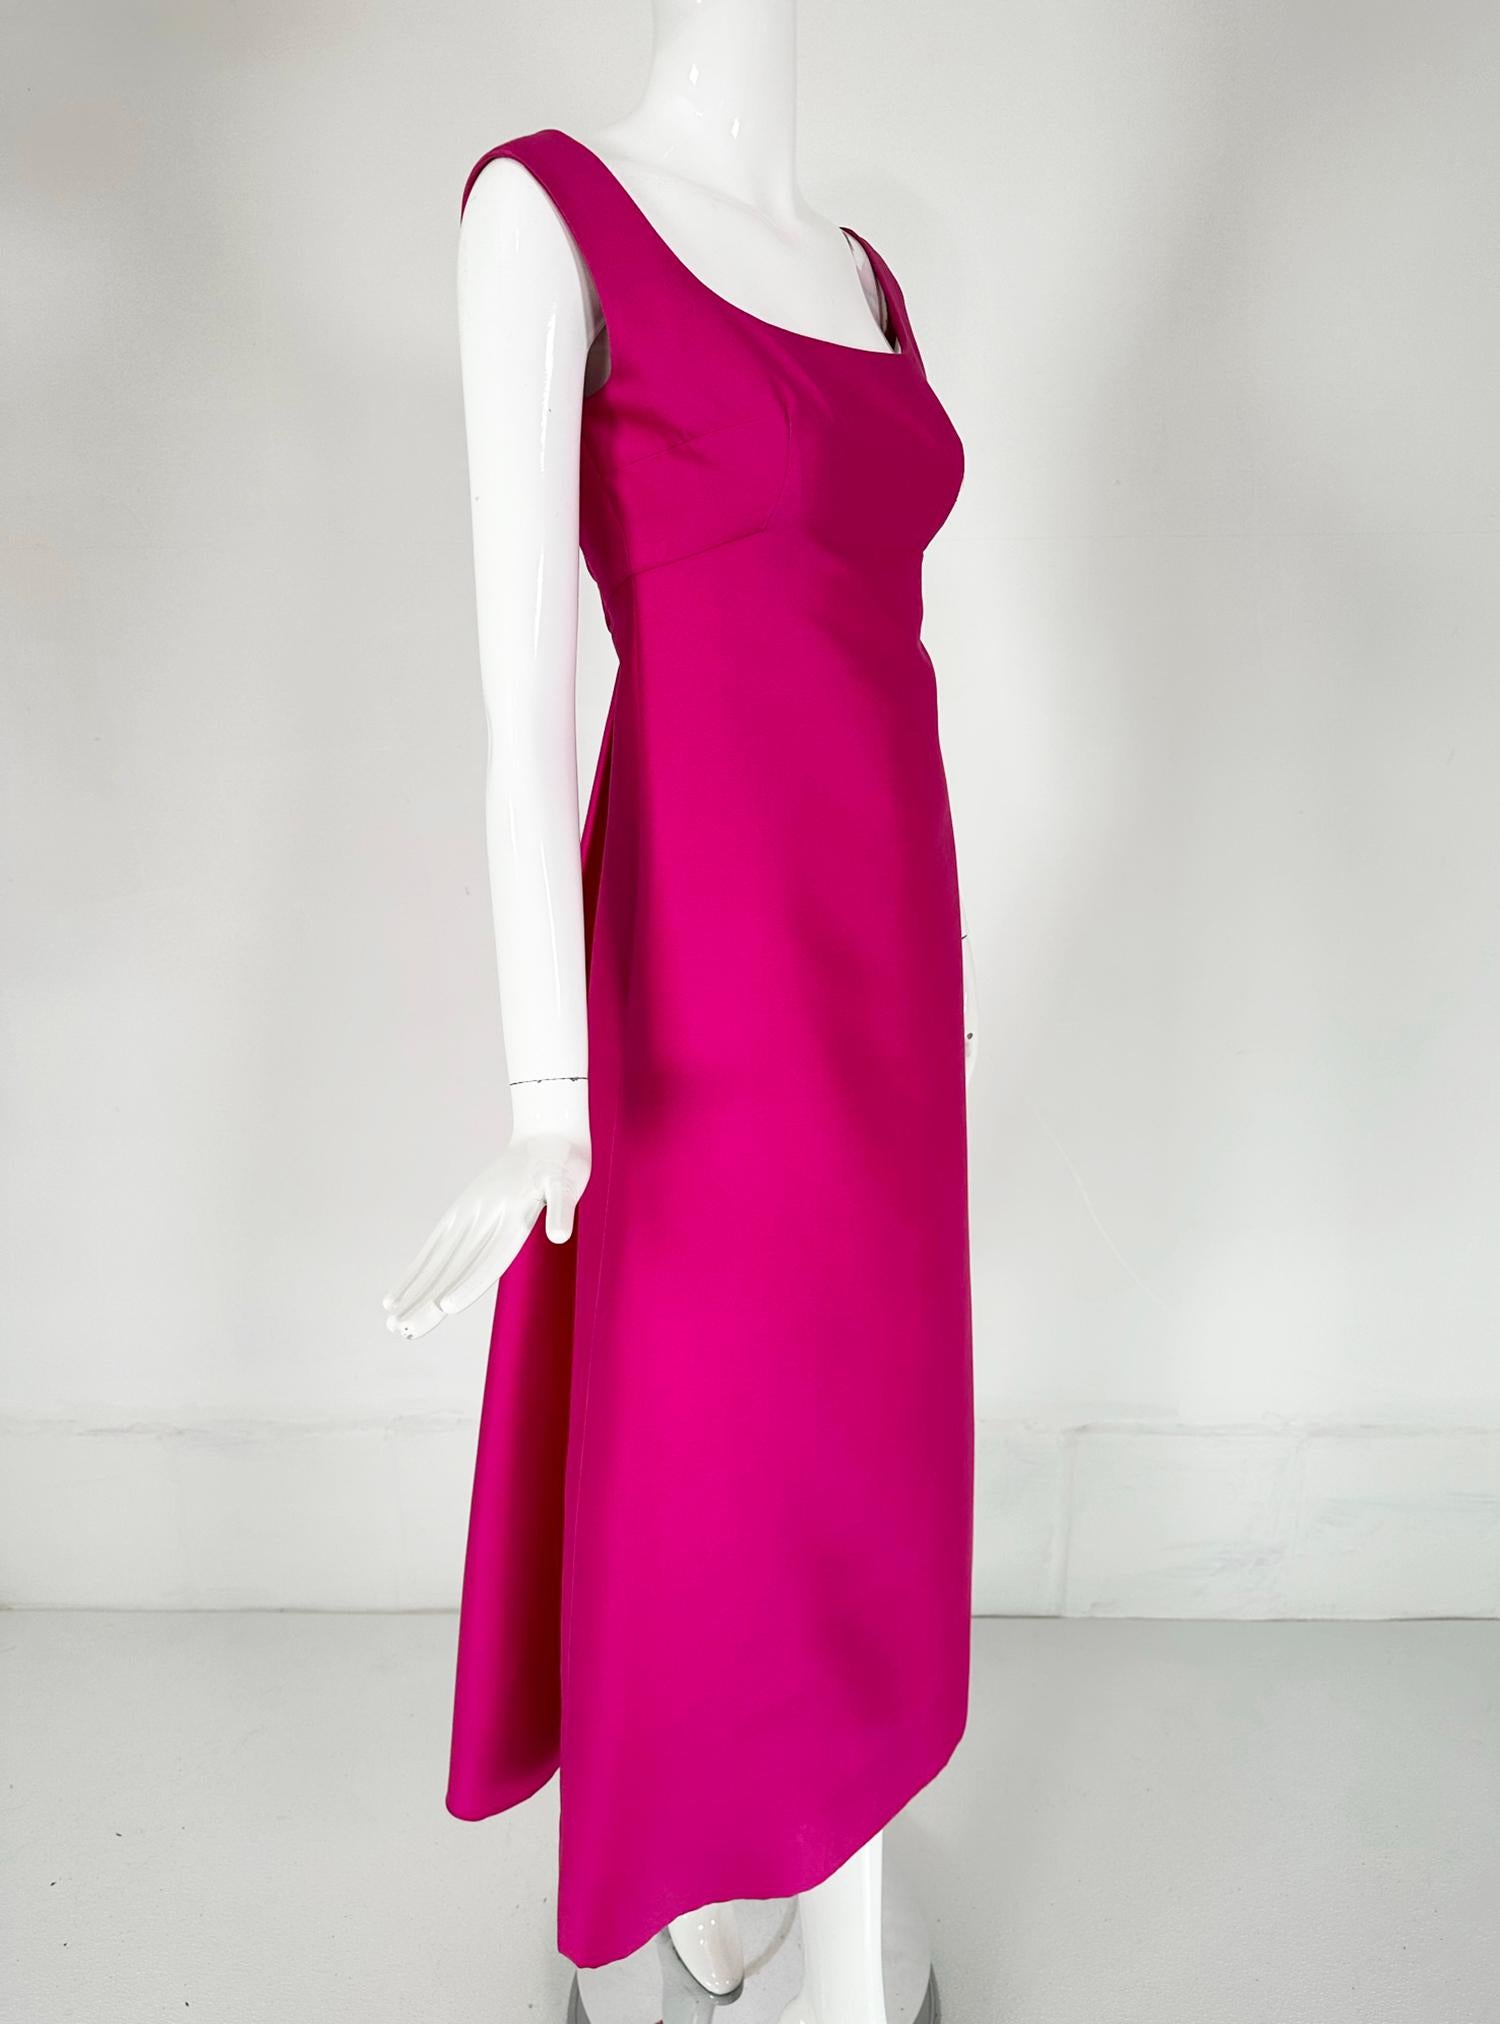 Robe de soirée en twill de soie rose fuchsia de Malcolm Starr, début des années 1960. Une robe magnifique pour toute occasion spéciale. La robe présente un décolleté plongeant sur le devant, des pinces hautes au niveau du buste et une taille empire